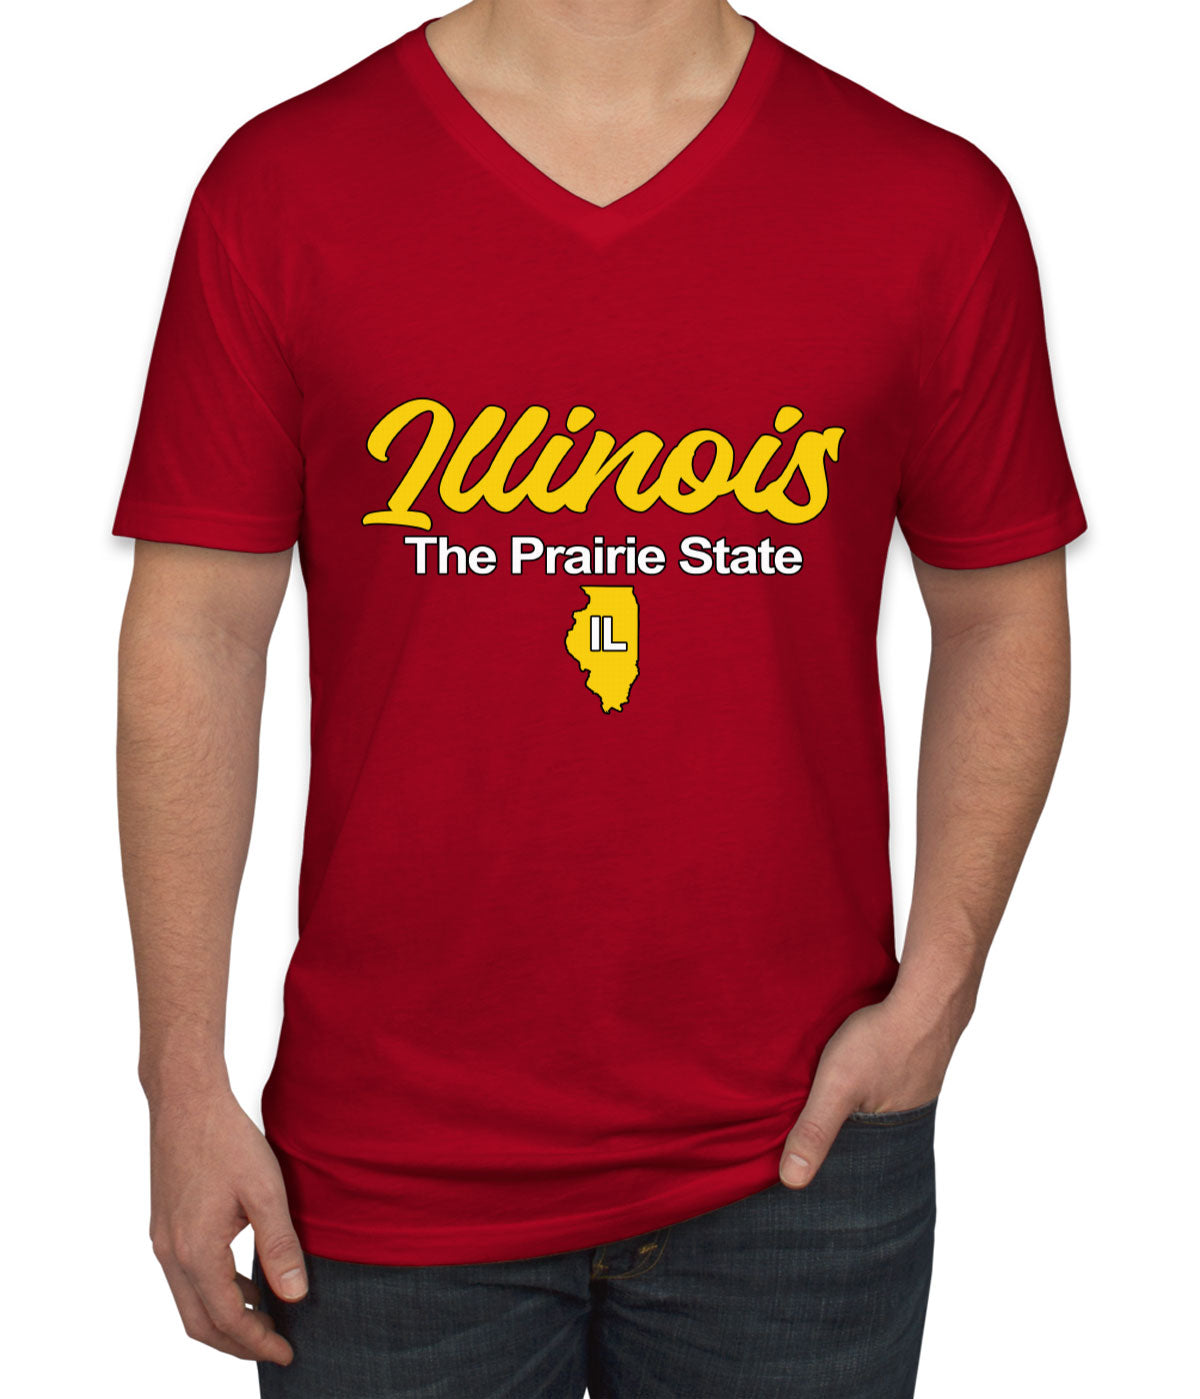 Illinois The Prairie State Men's V Neck T-shirt